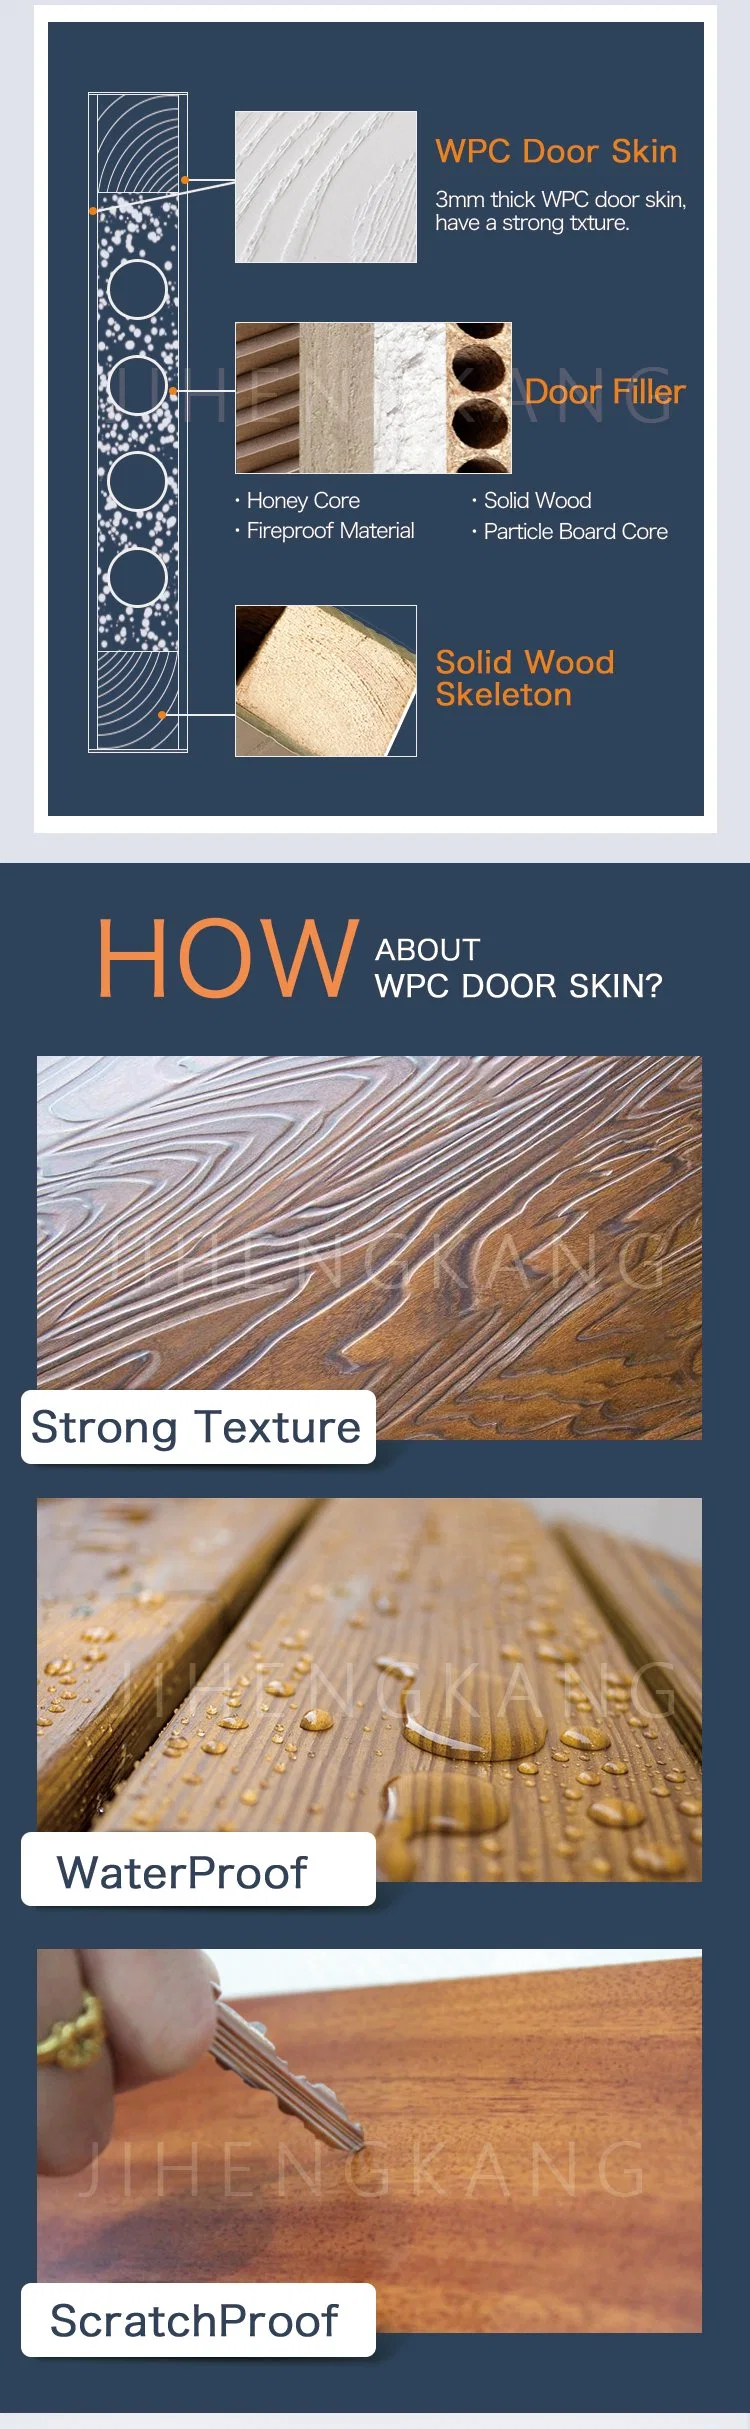 Jhk Arched Wooden Bathroom Solid Wood Core Interior WPC Door